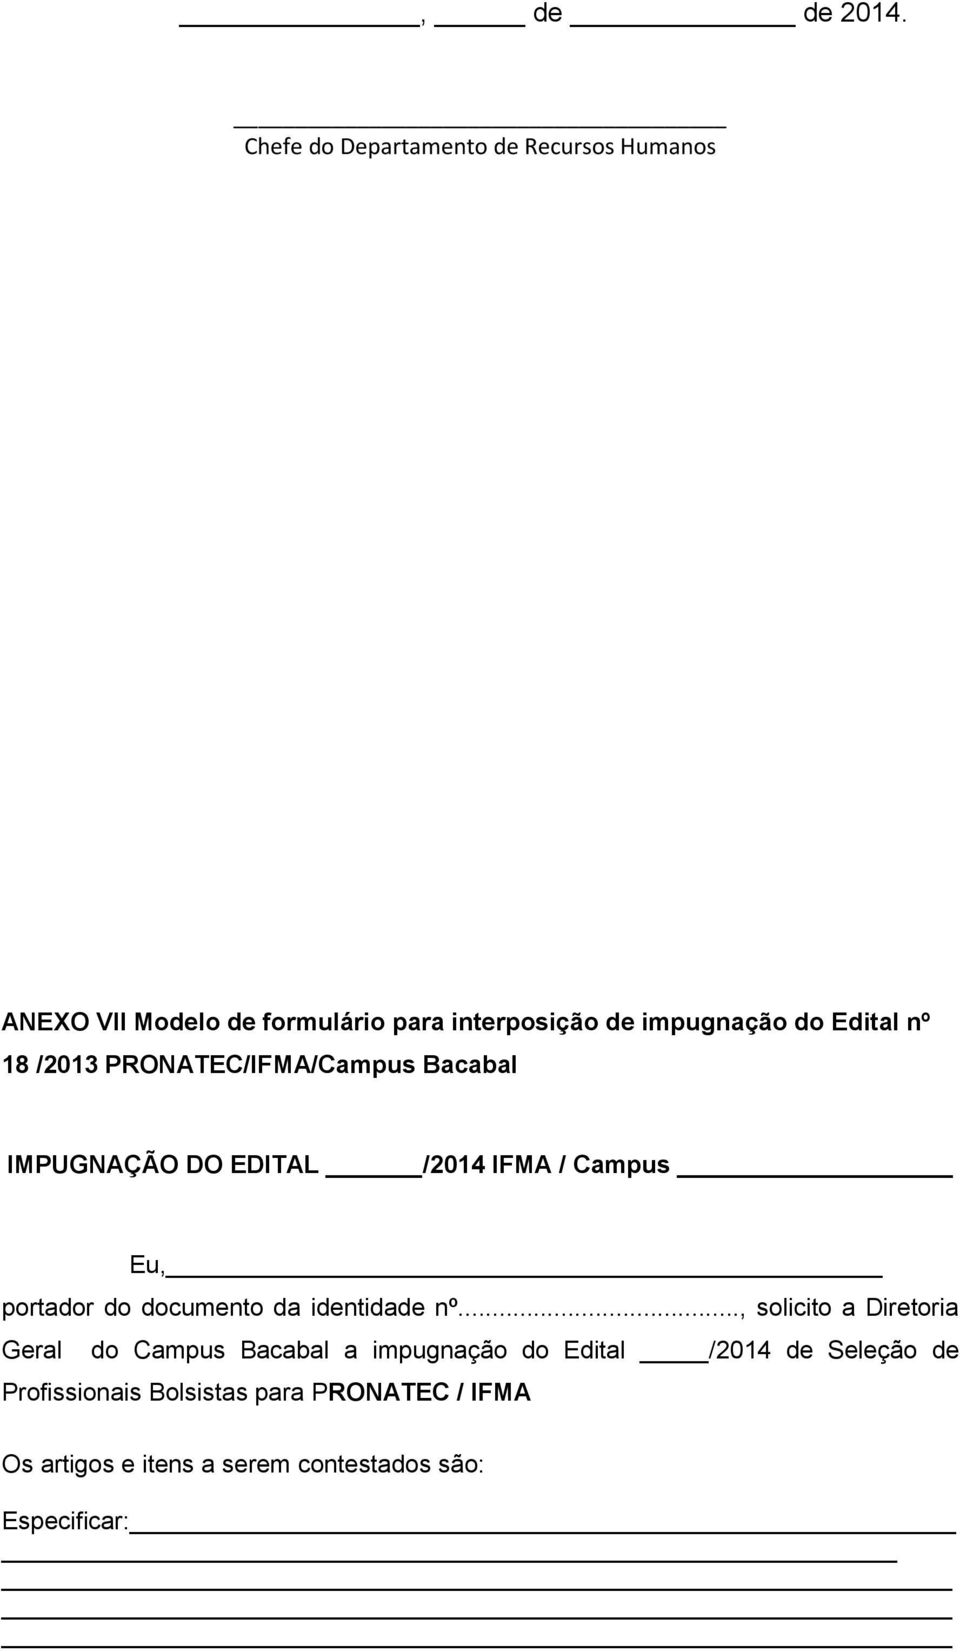 Edital nº 18 /2013 PRONATEC/IFMA/Campus Bacabal IMPUGNAÇÃO DO EDITAL /2014 IFMA / Campus Eu, portador do